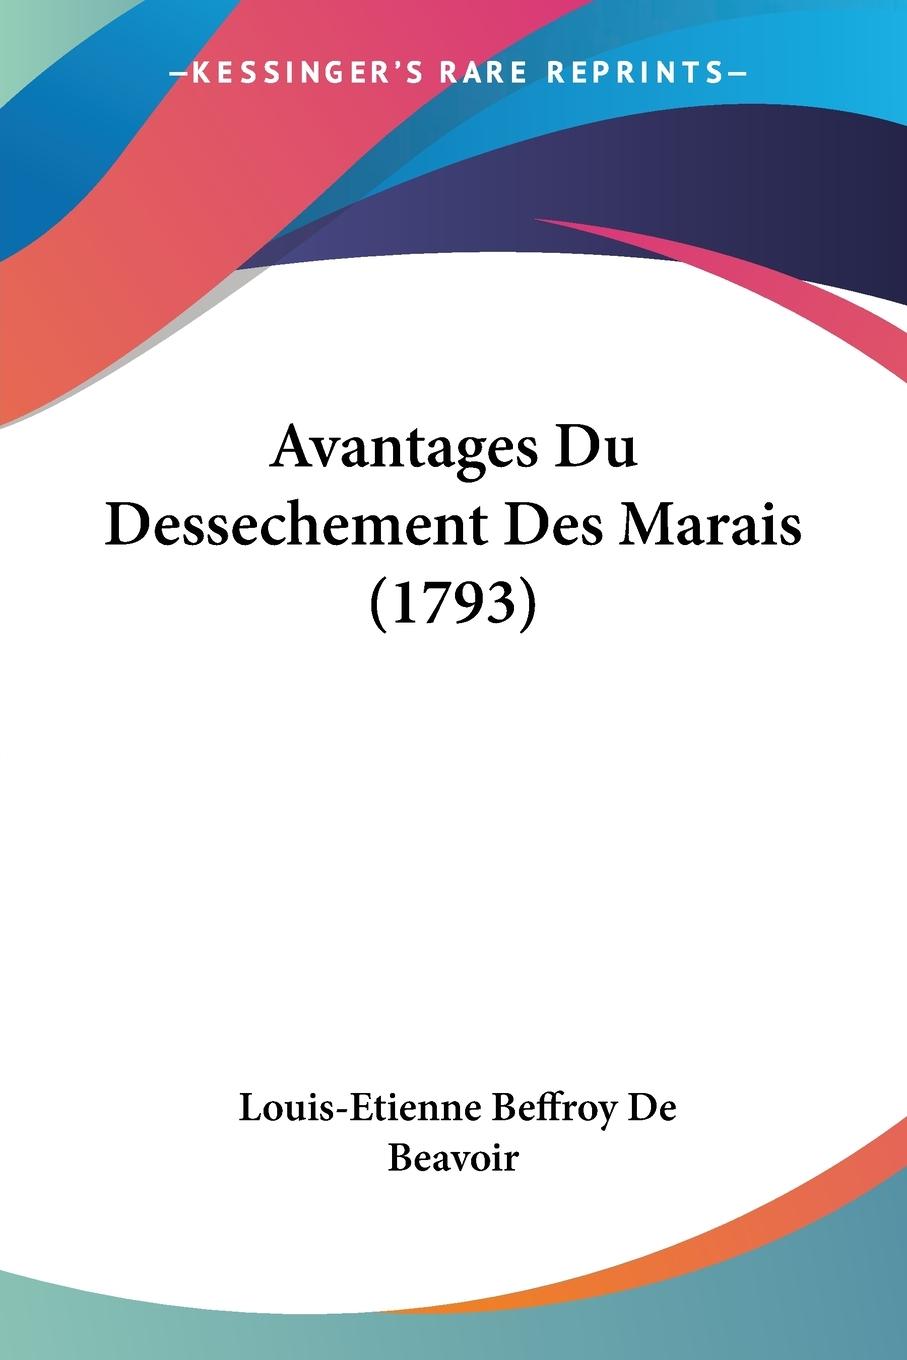 Avantages Du Dessechement Des Marais (1793) - De Beavoir, Louis-Etienne Beffroy